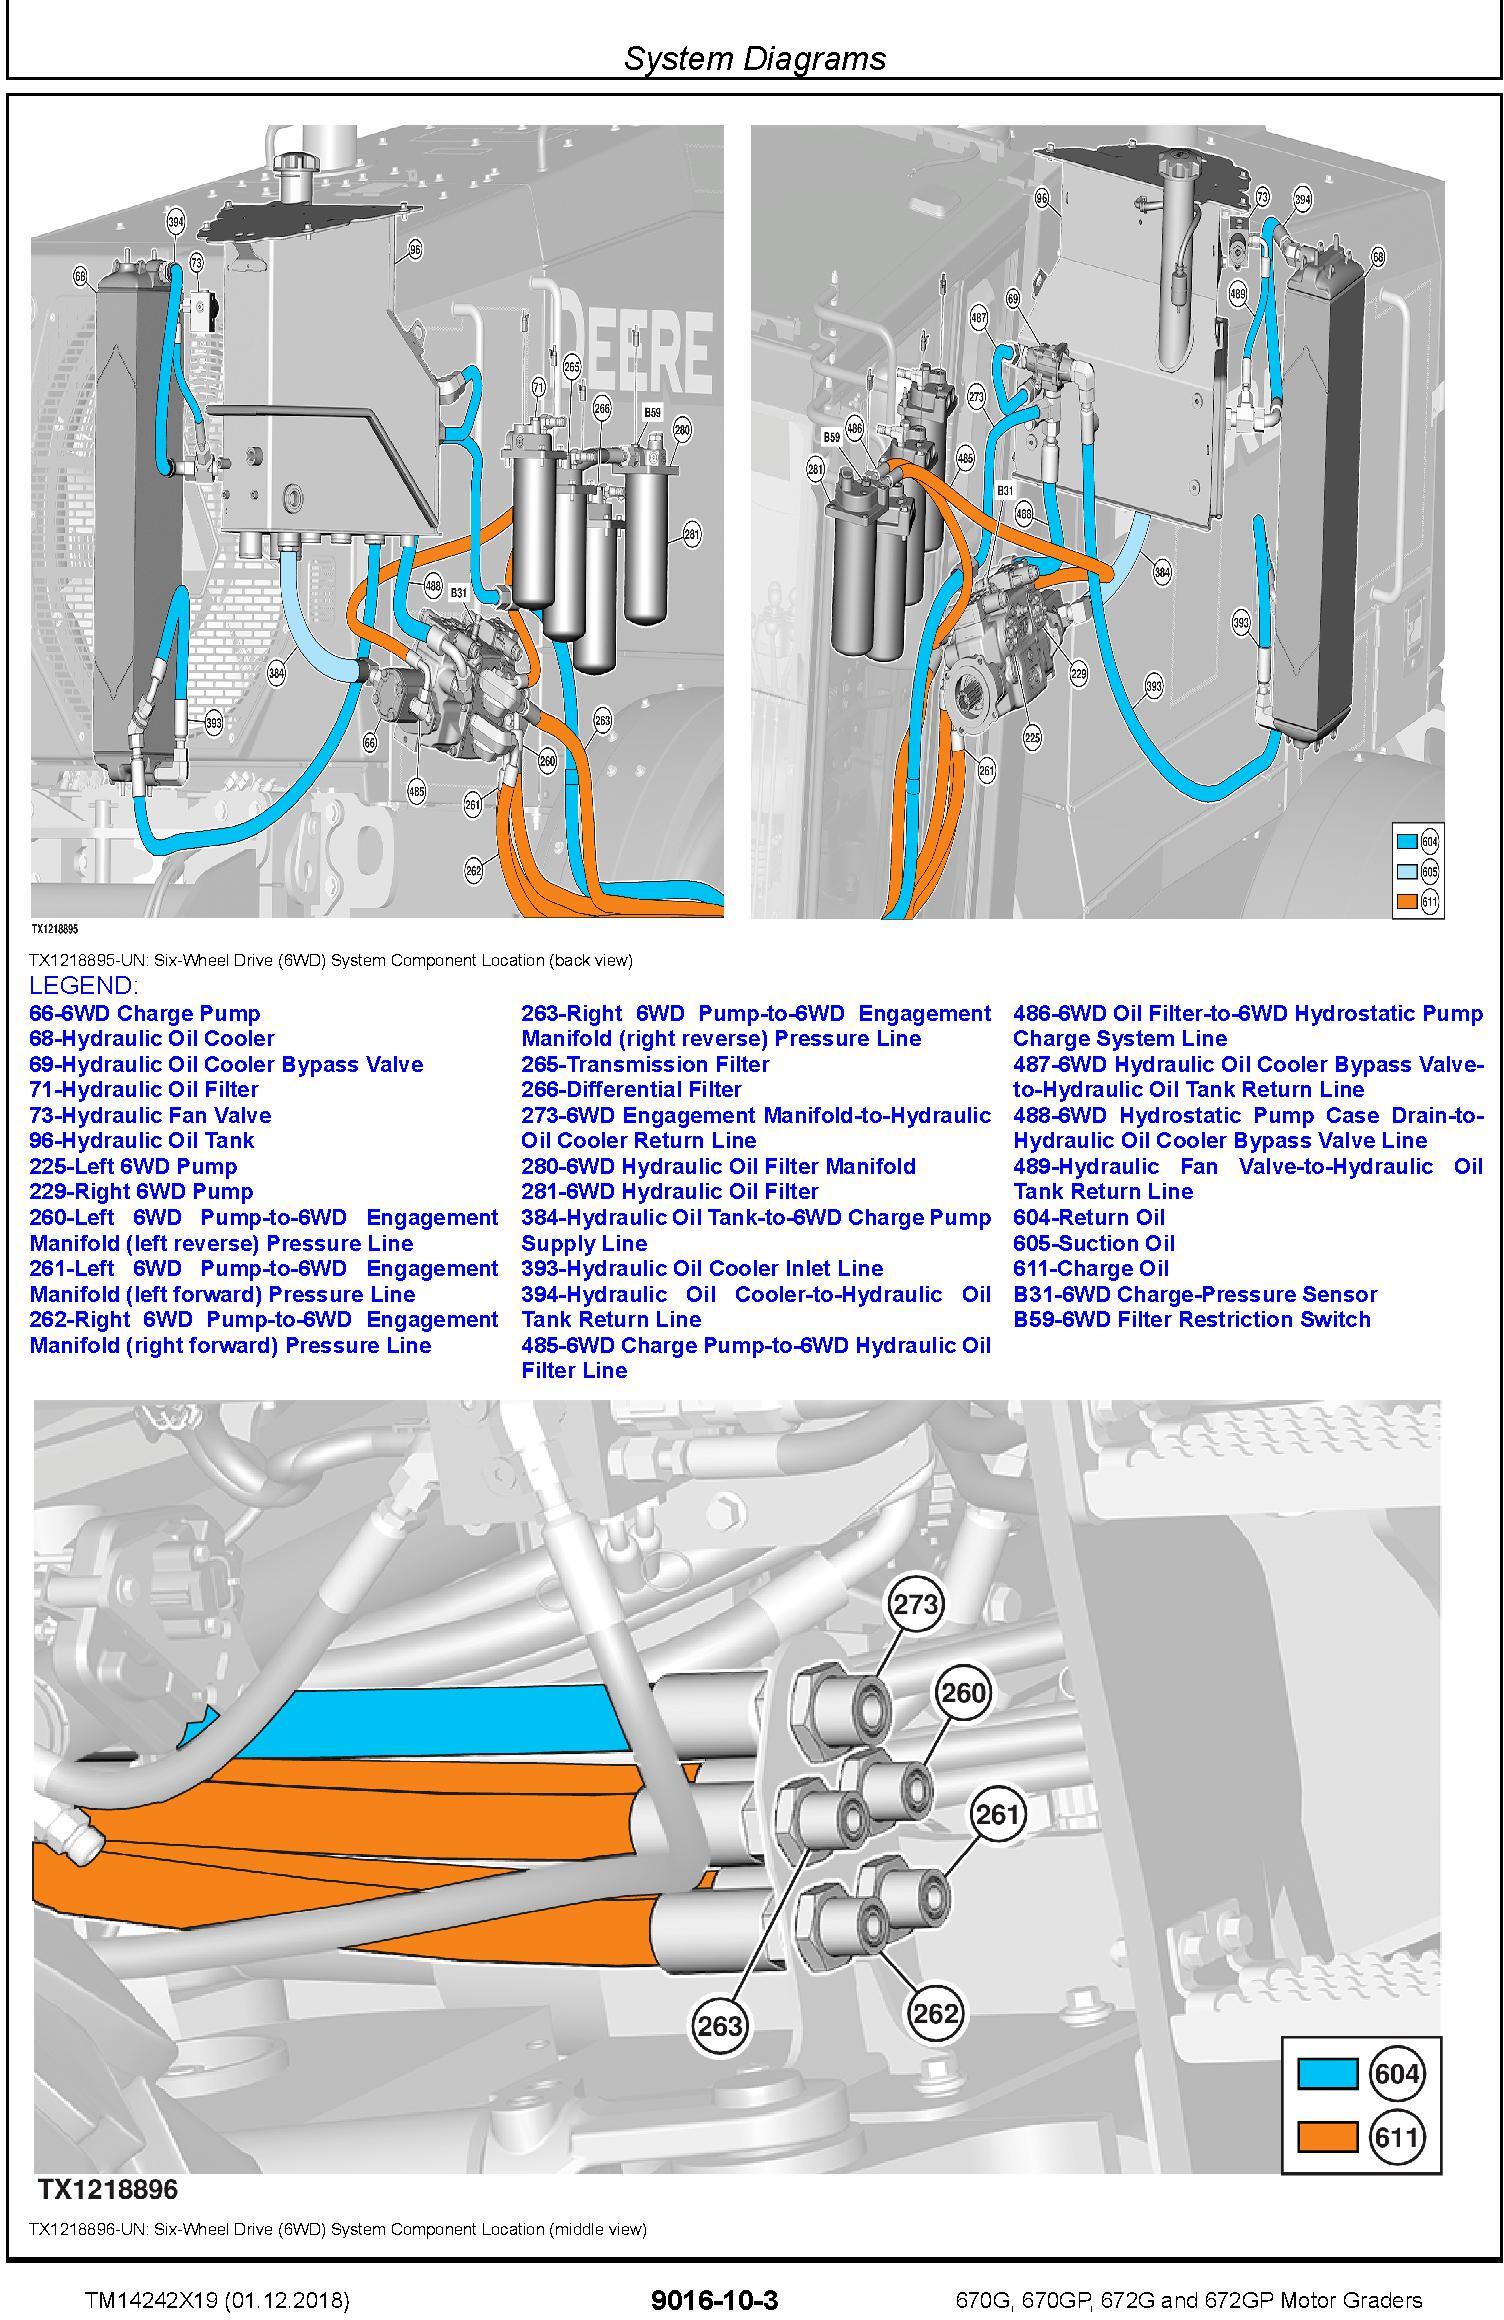 John Deere 670G,670GP, 672G,672GP (SN.F680878-,L700954) Motor Graders Diagnostic Manual (TM14242X19) - 3